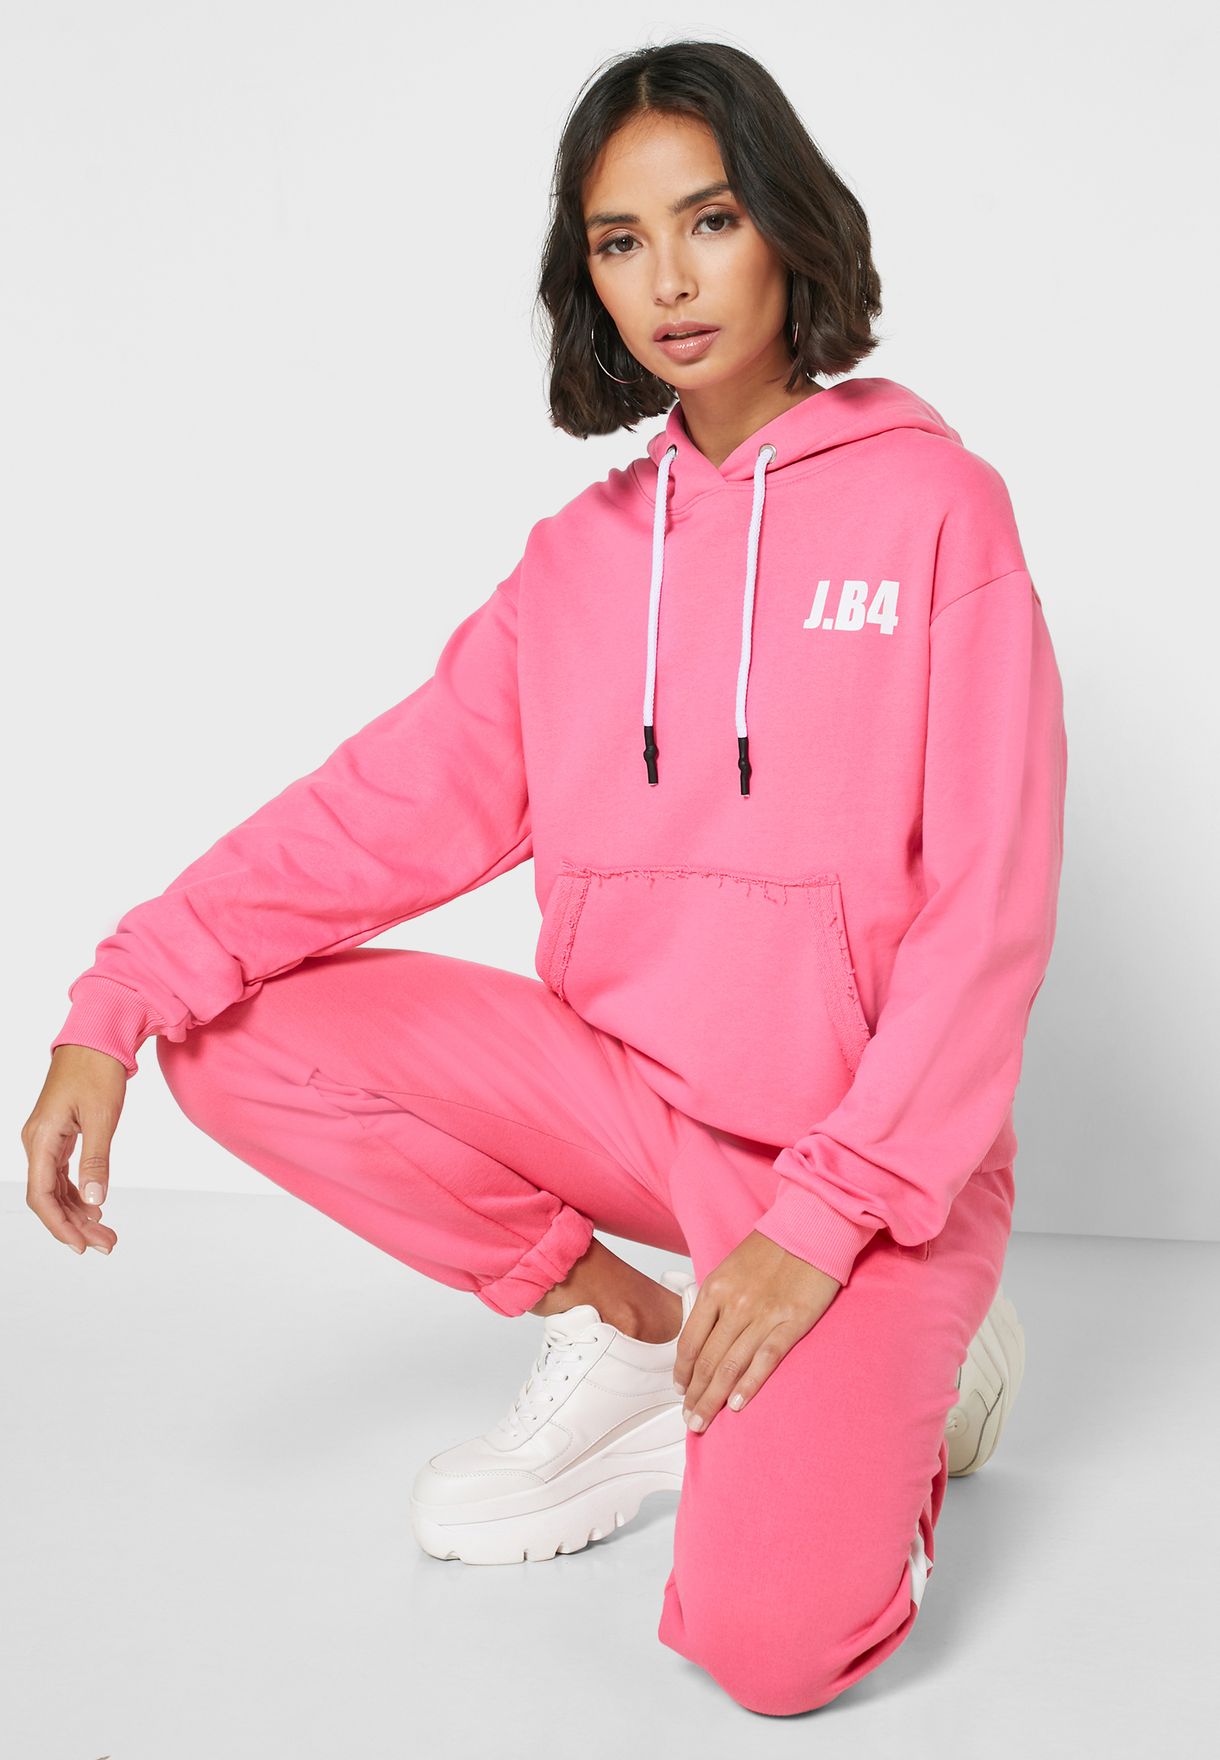 skechers hoodie womens pink